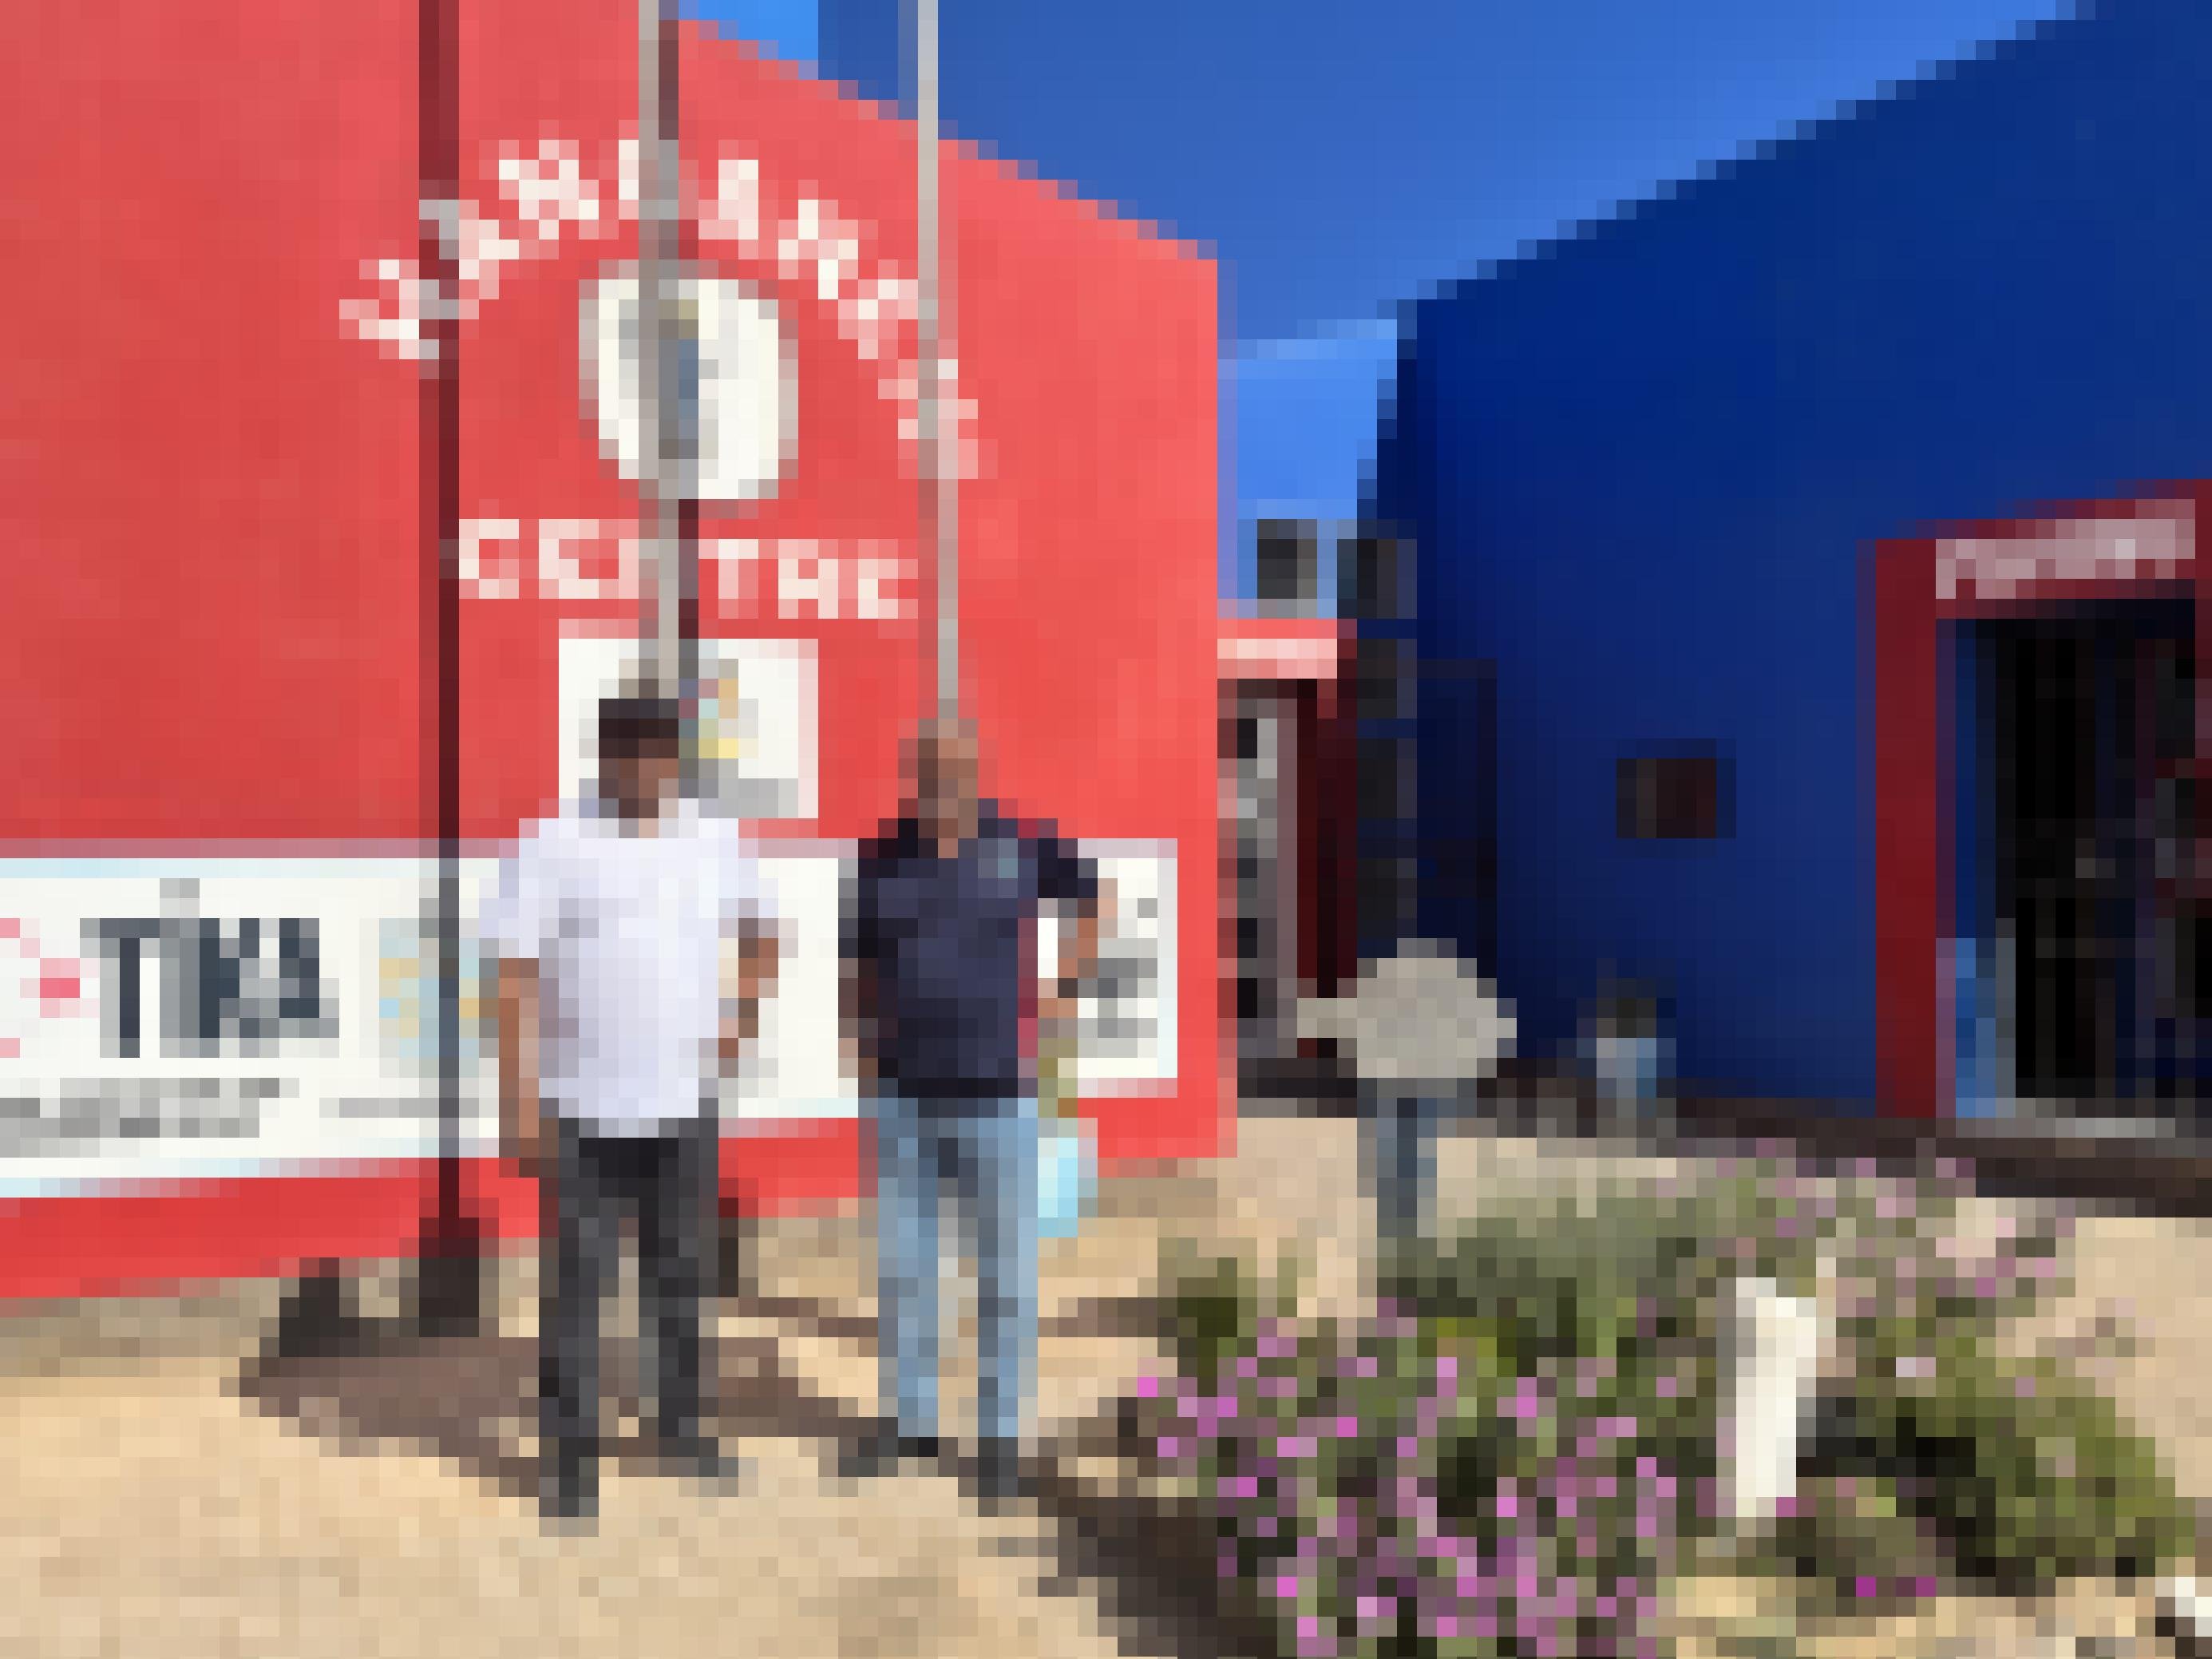 Die beiden Männer stehen vor dem rot-blauen HAFA-Gebäude. Eine Hand in die Hüfte gestemmt.